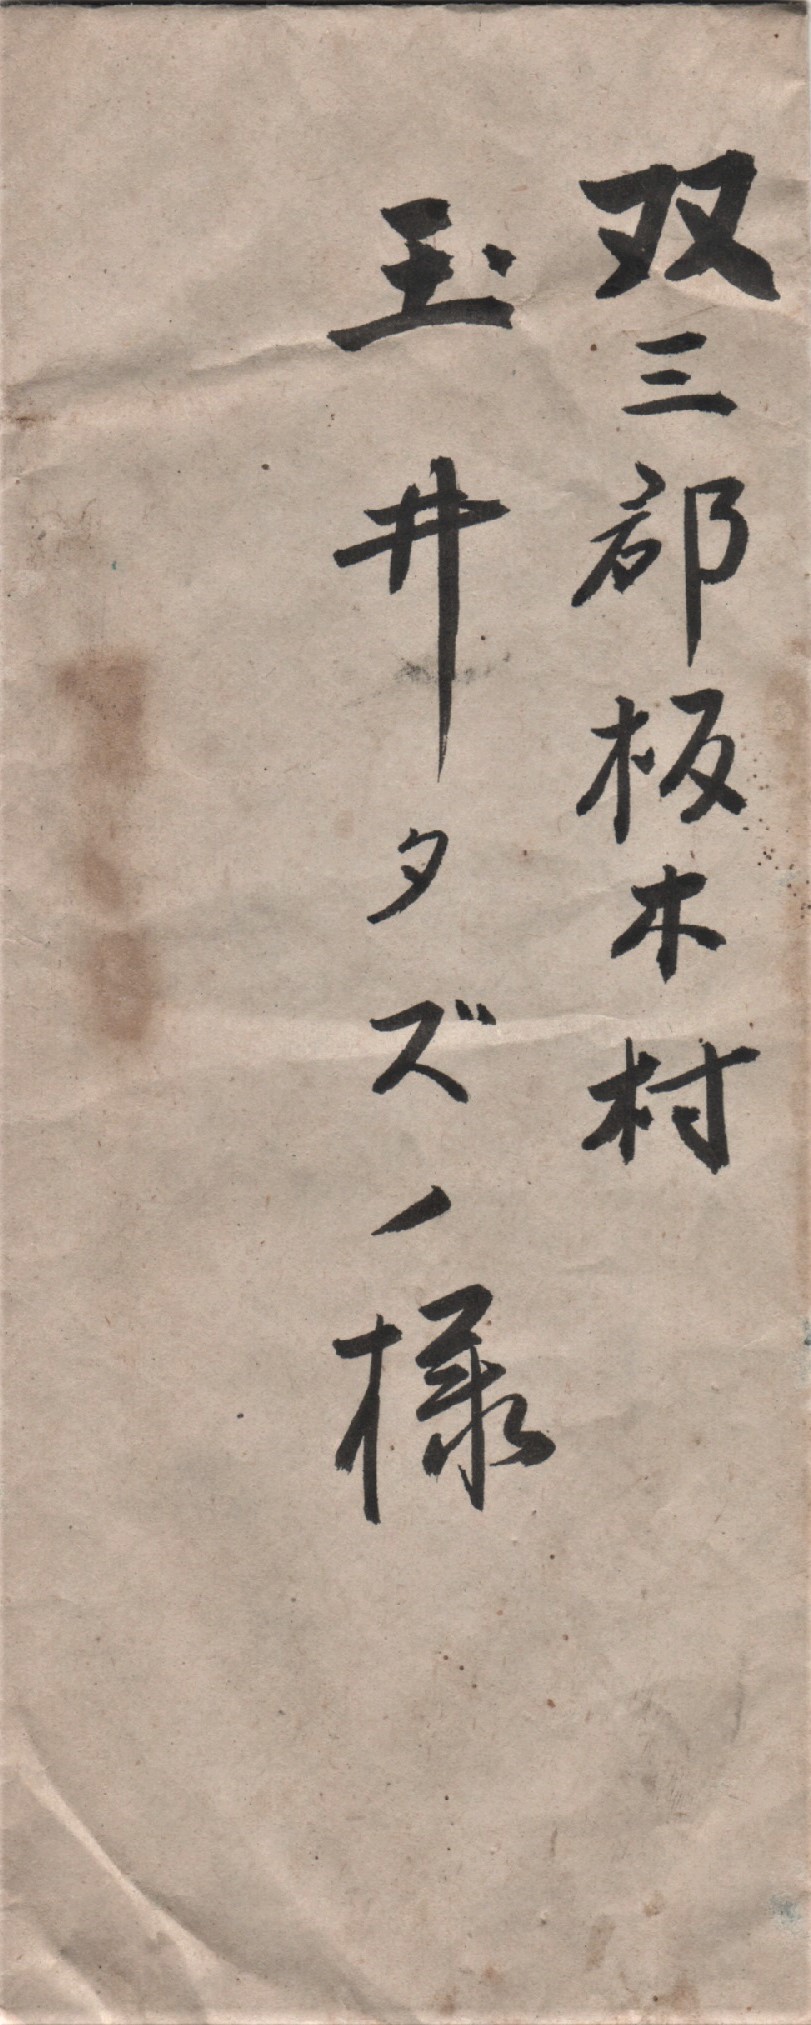 昭和２３年６月５日 投函されず手許に遺ったままの手紙 認められたのは敬が亡くなる二日前 1944に遭遇した家族